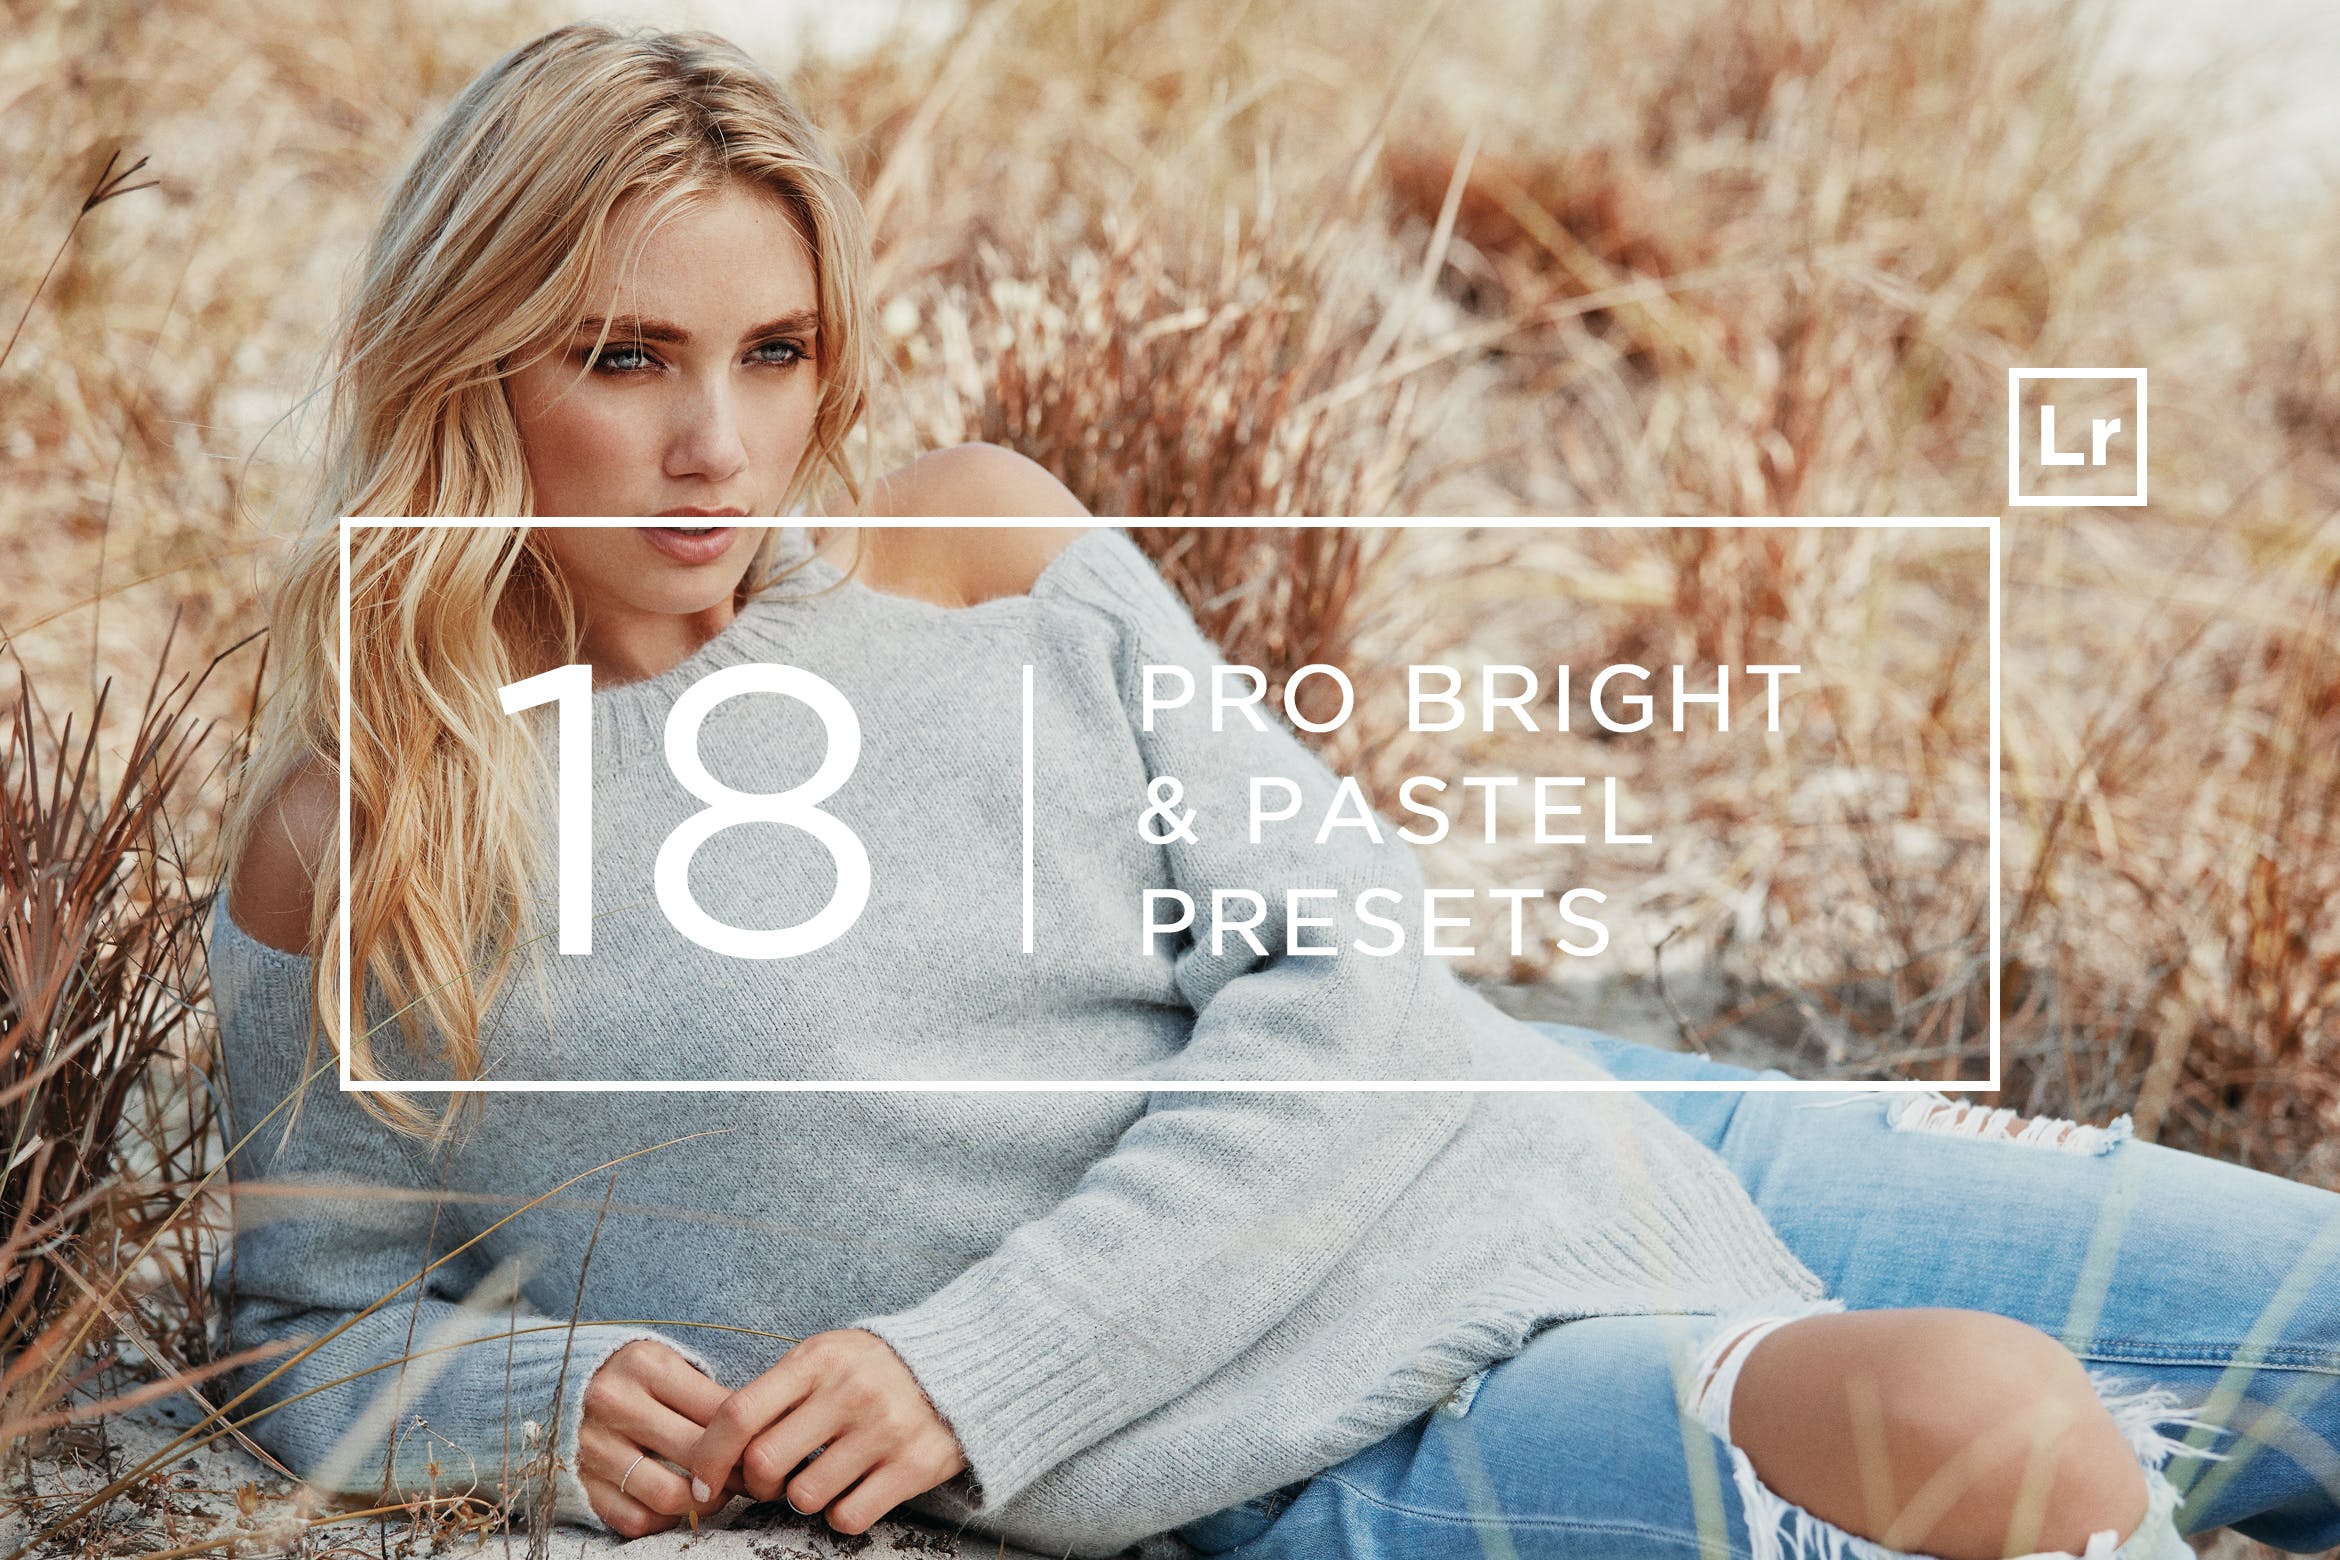 18个专业摄影师调色滤镜定制16图库精选LR预设 18 Pro Bright & Pastel Lightroom Presets插图